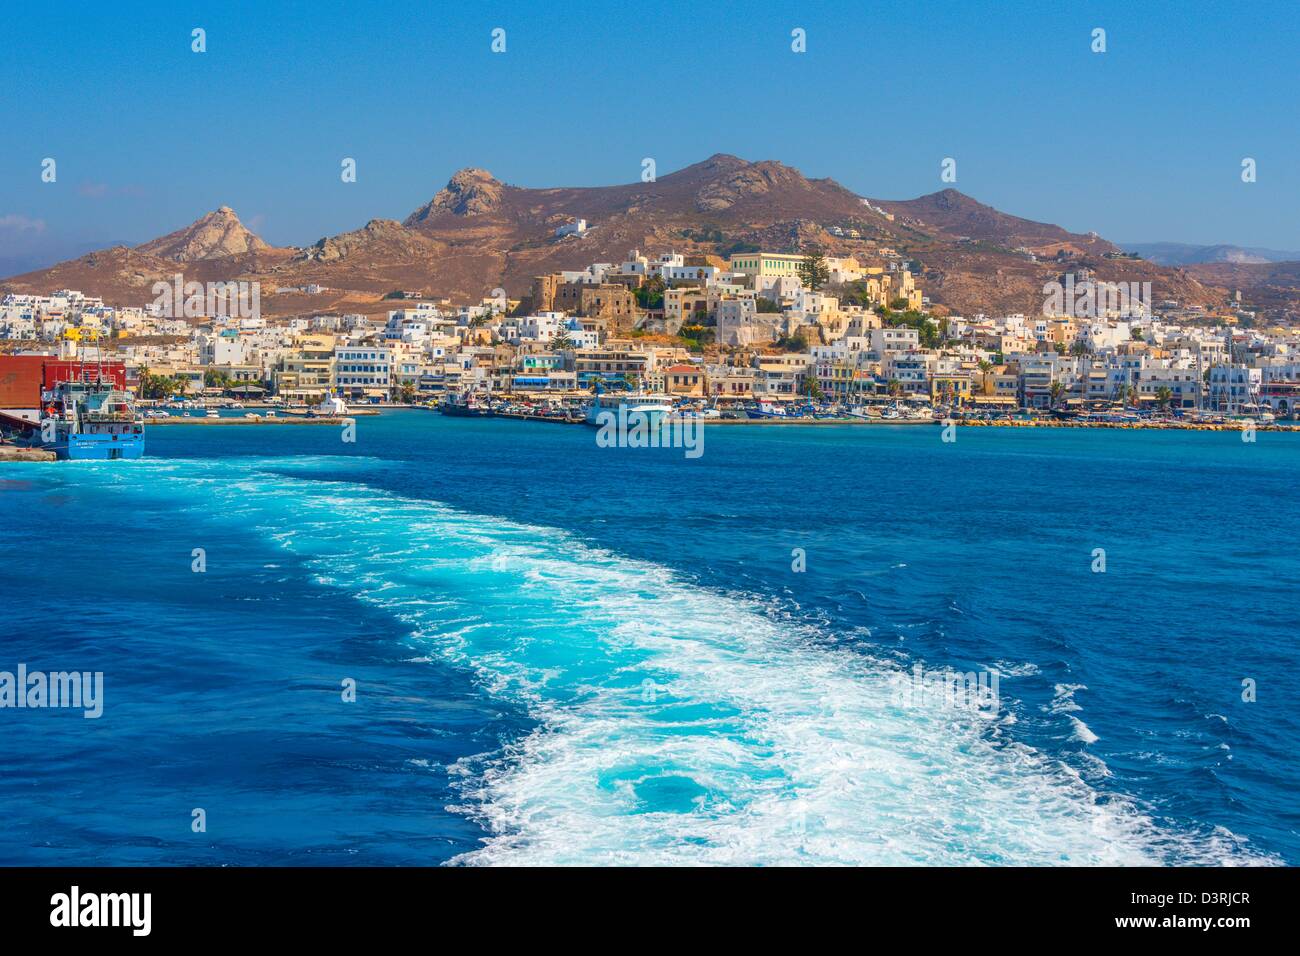 Da Atene di prendere un traghetto per visitare le isole greche, Naxos è una sosta nel viaggio attraverso il Mare Egeo embayment del Mediterraneo Foto Stock